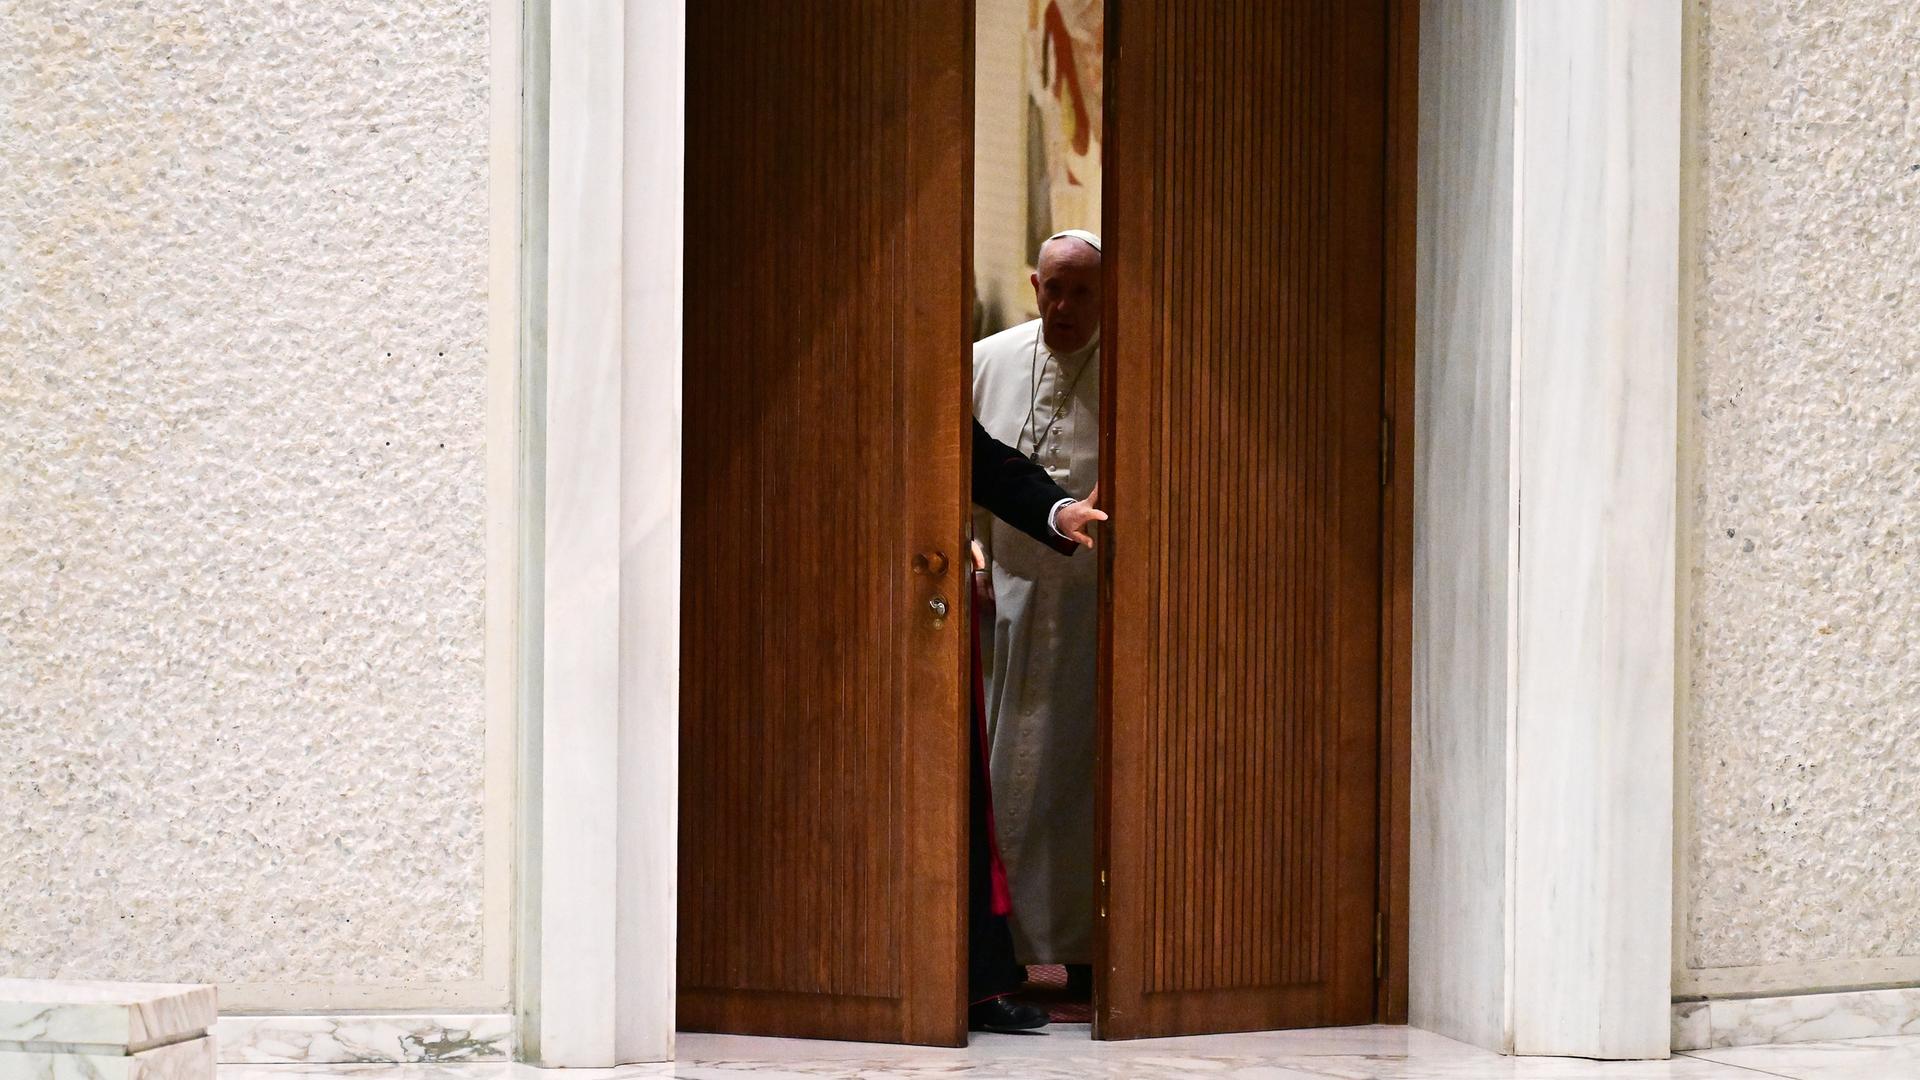 In Rom öffnet sich die größe Tür zur Generalaudienz bei Papst Franziskus I. einen Spalt weit